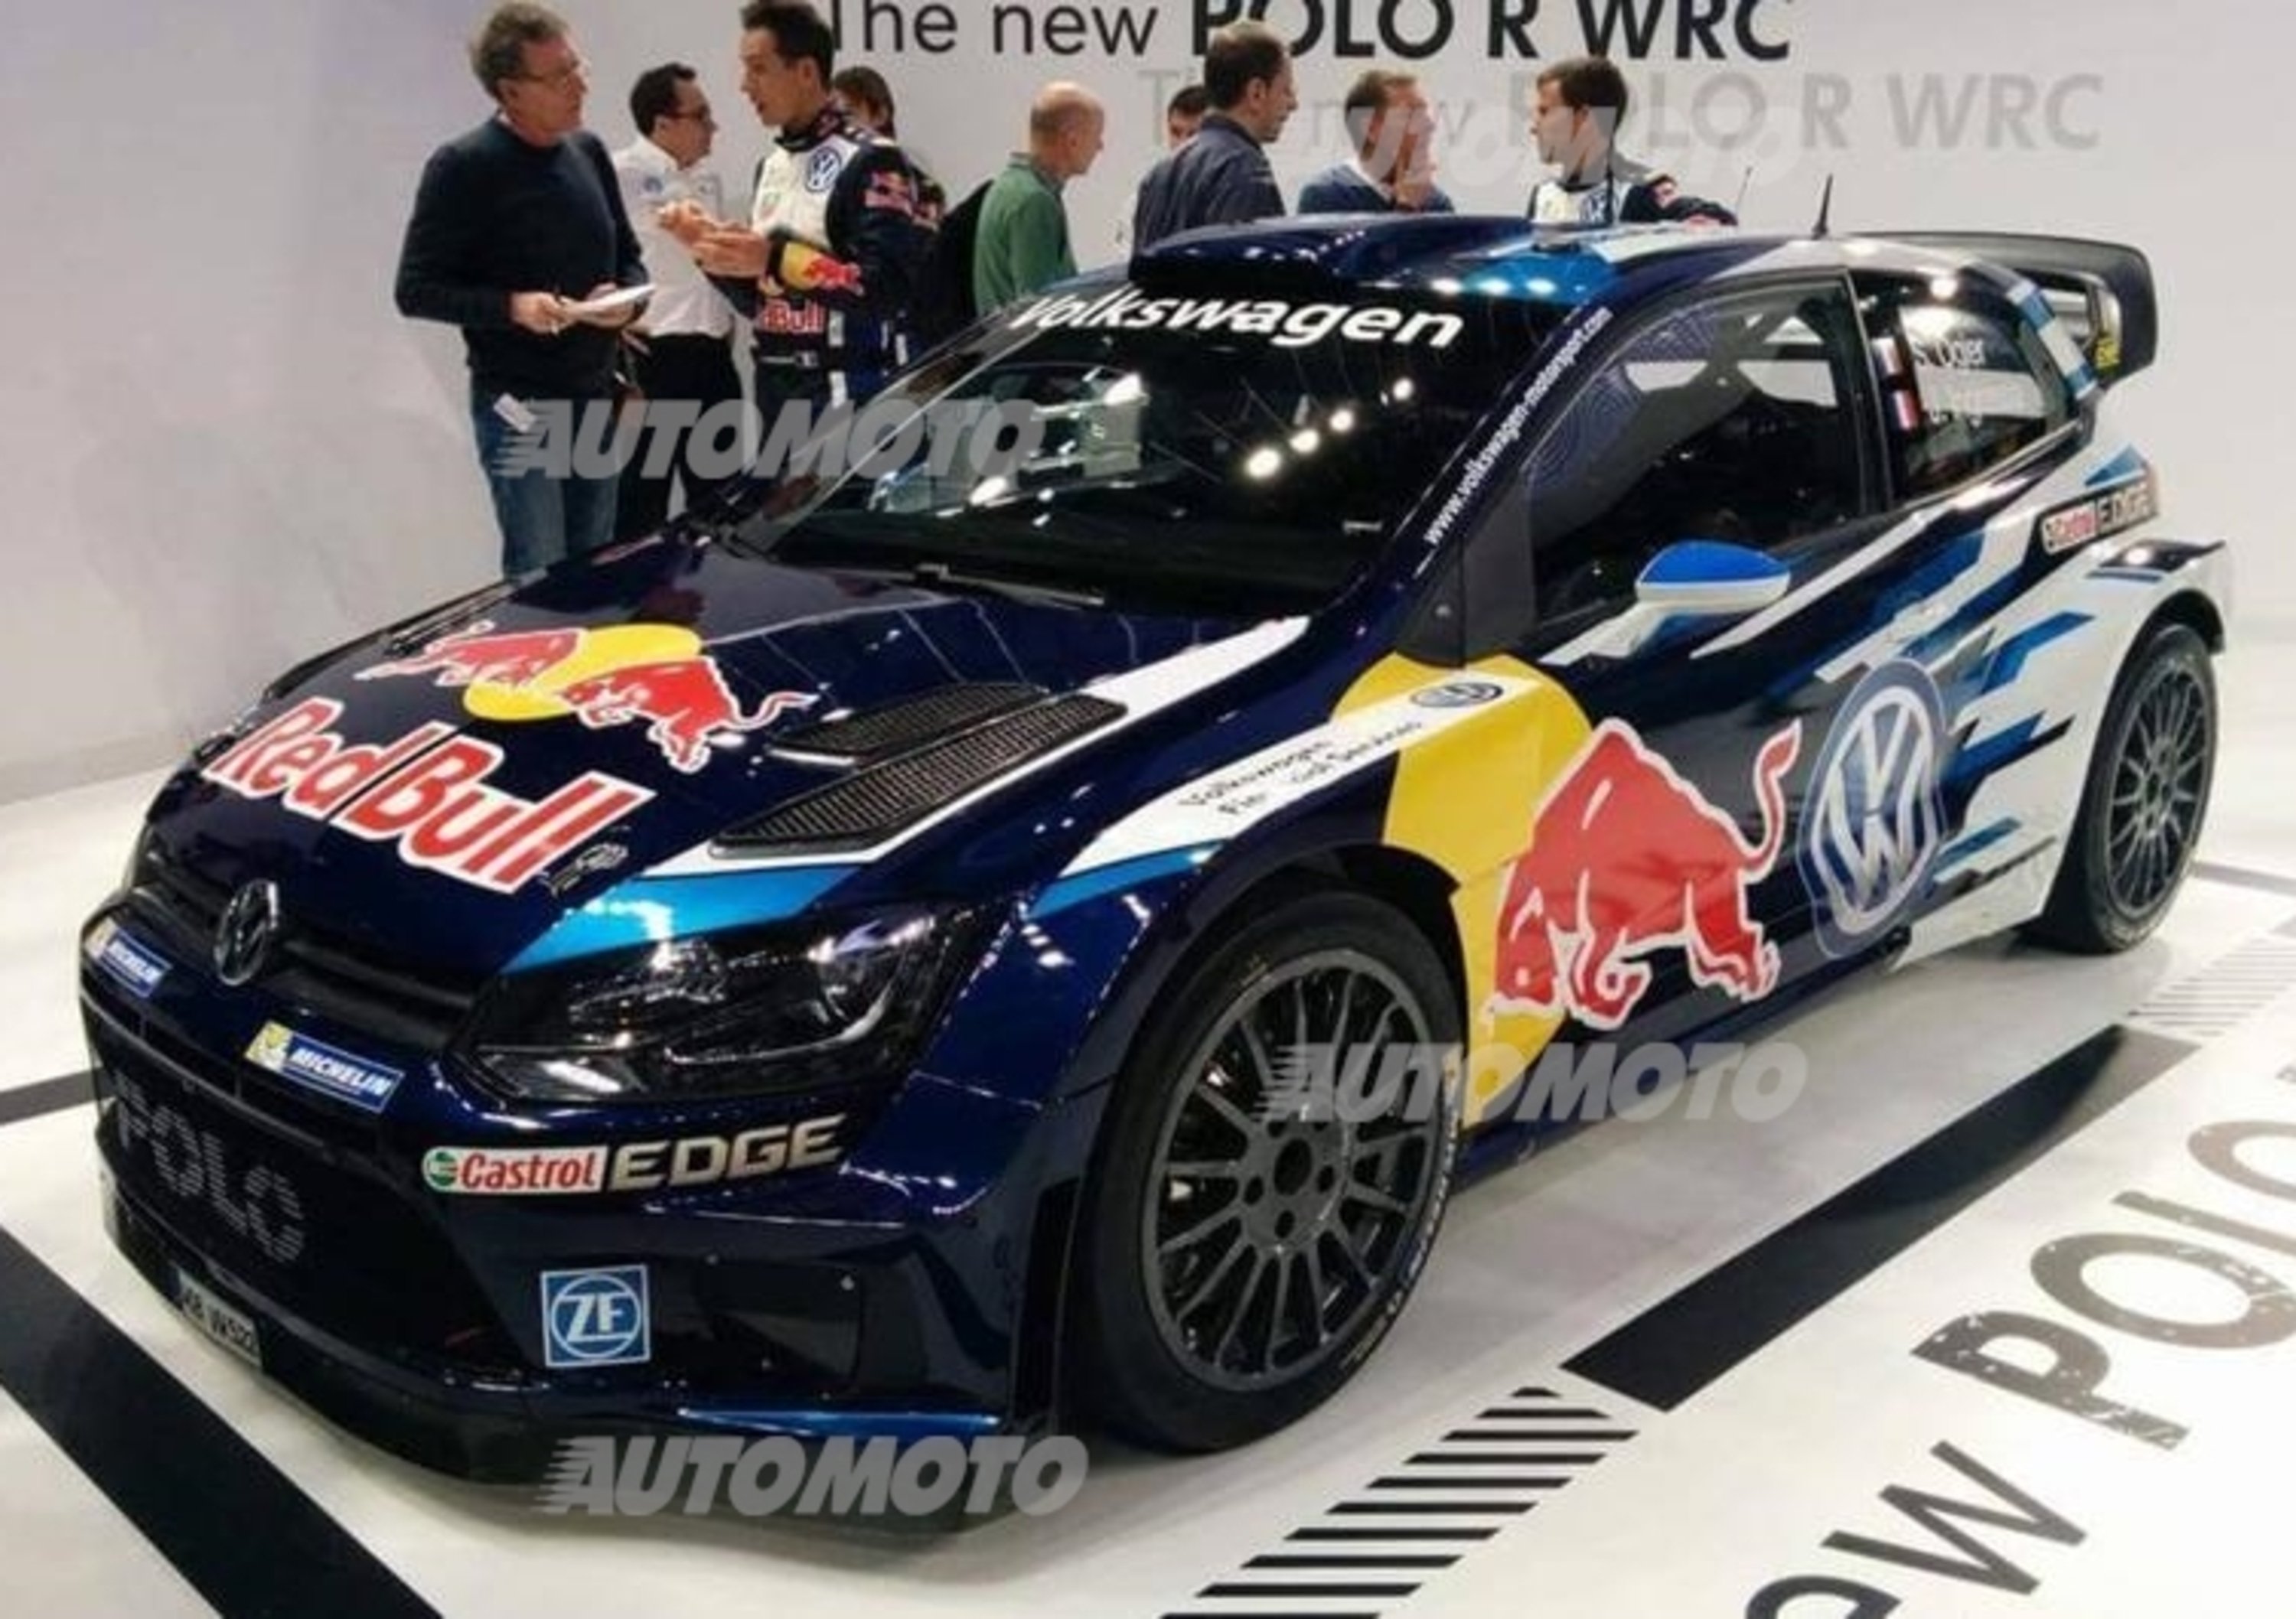 Volkswagen Polo R WRC: svelata la livrea della prossima stagione